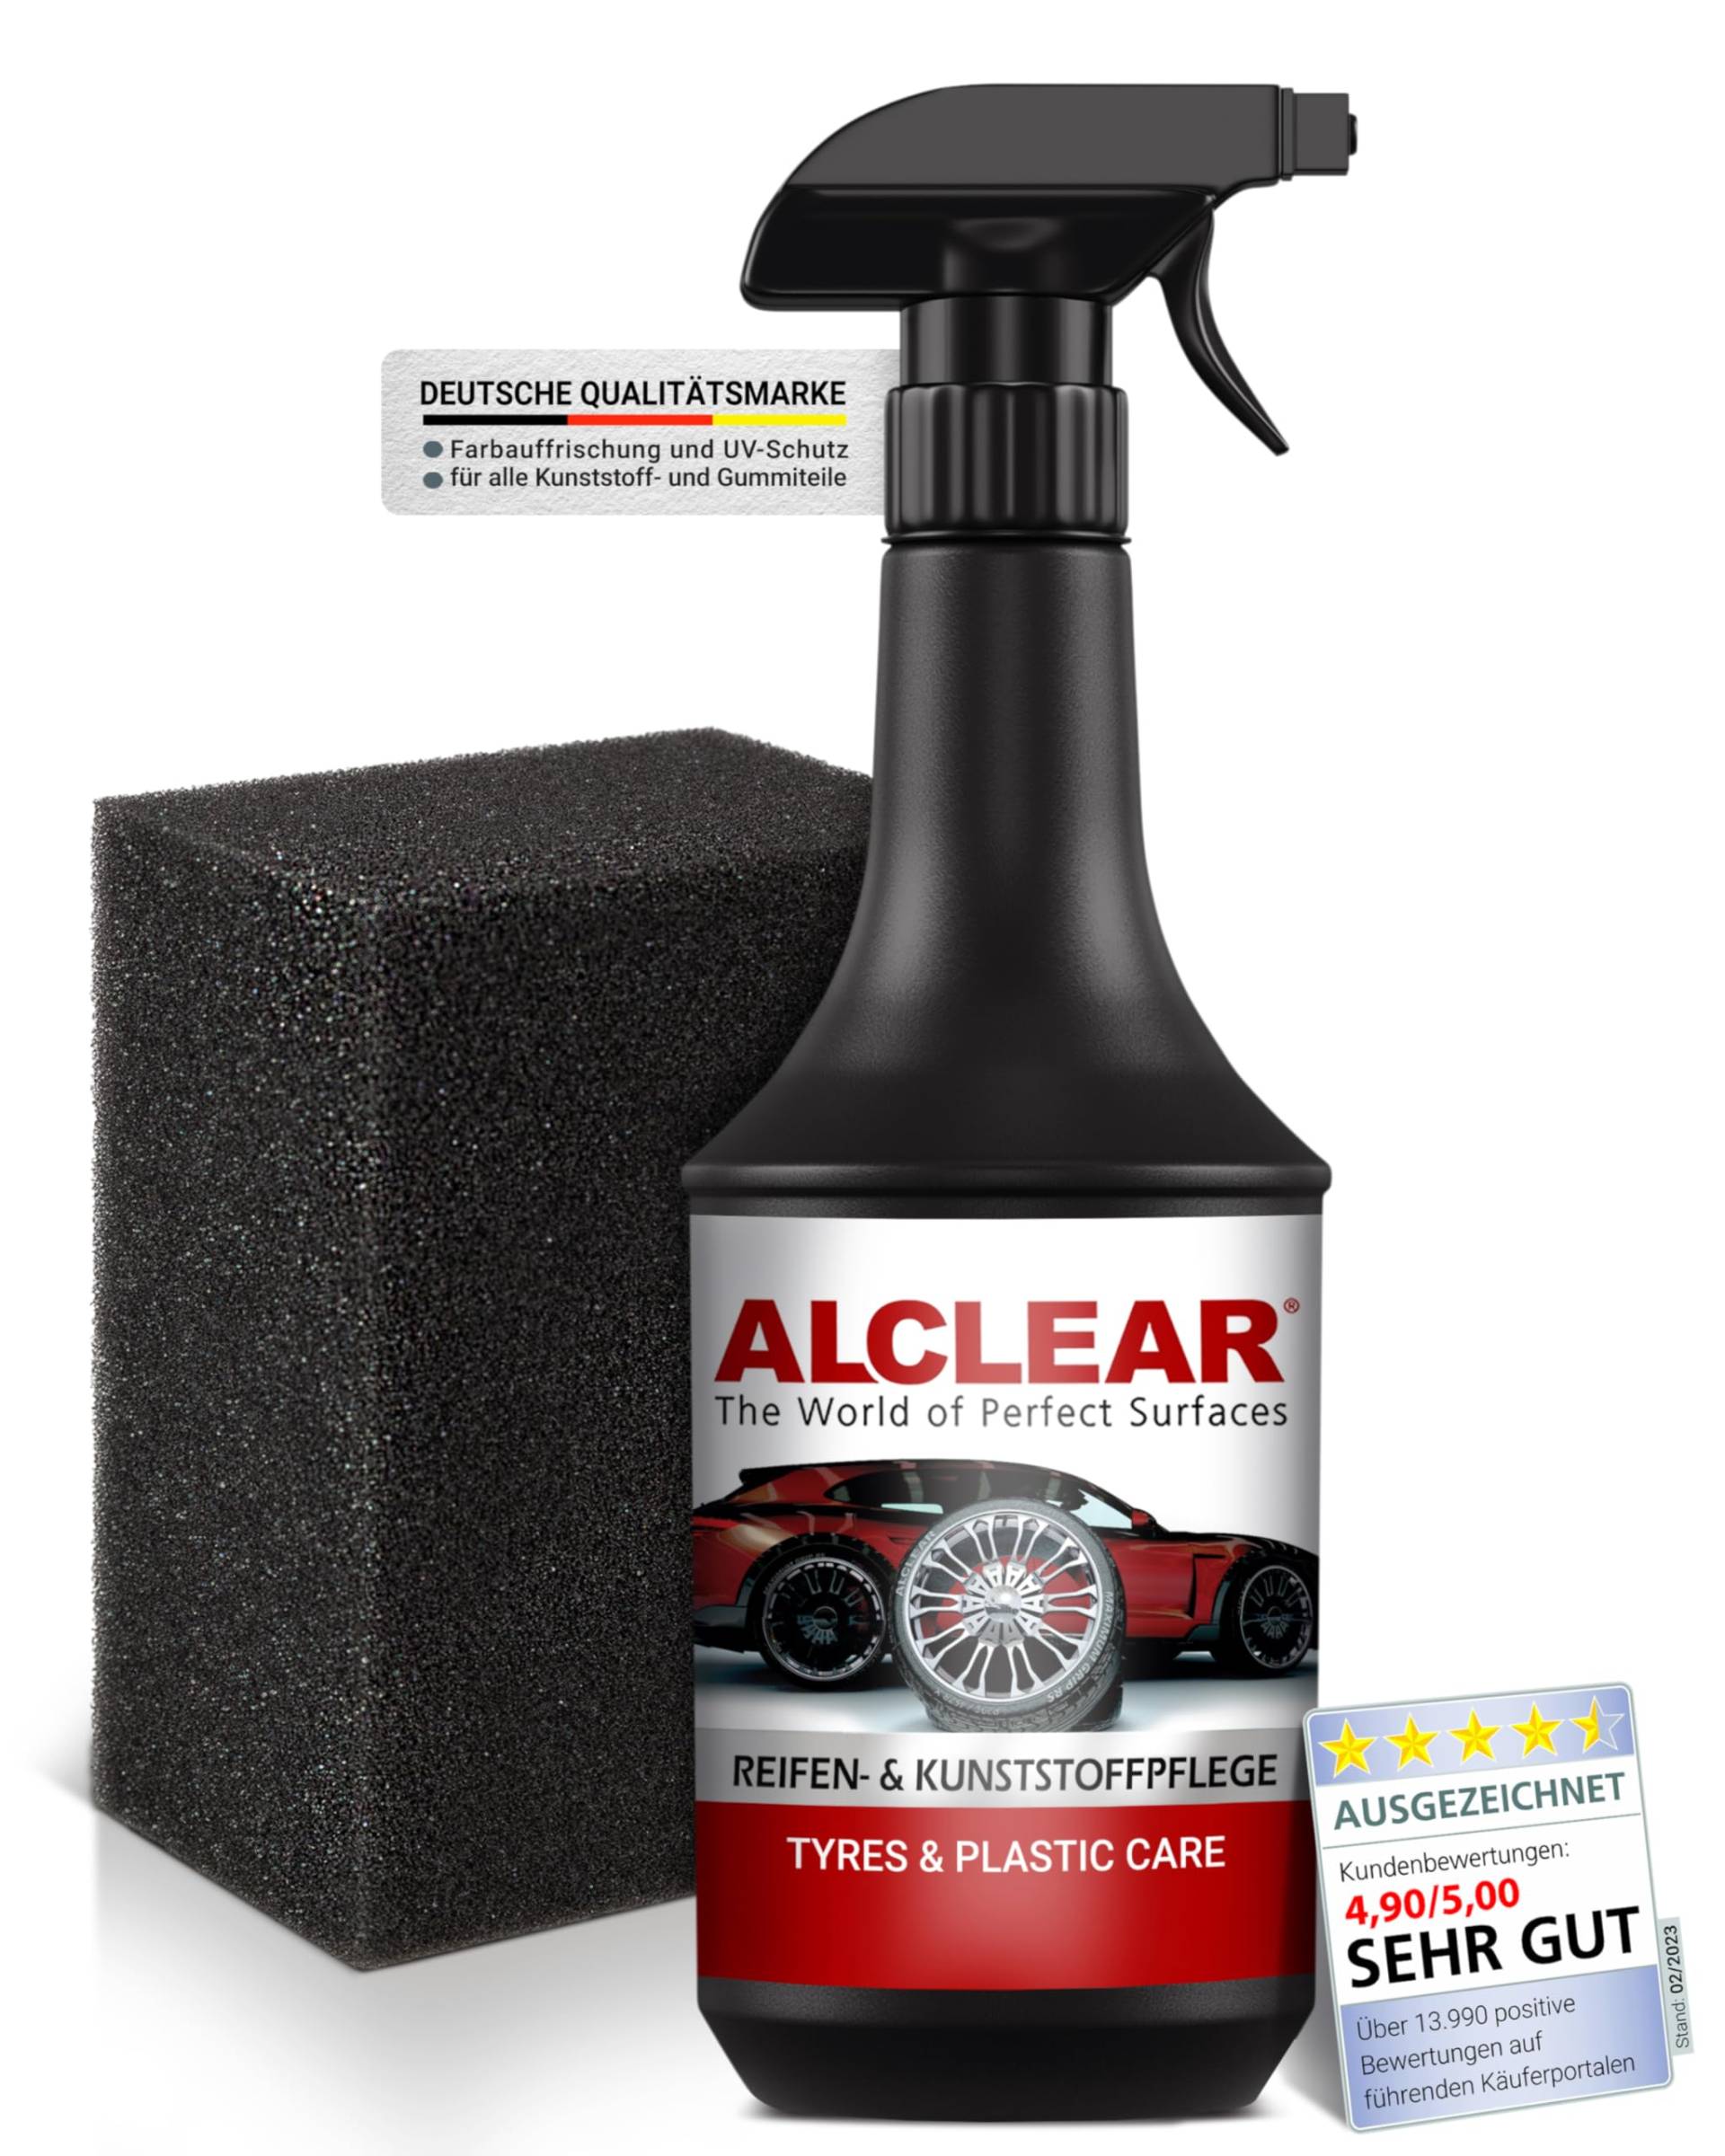 ALCLEAR Reifenglanz - Premium Autoreifen Pflege für matten Seidenglanz - 1000ml Autoreifen Glanzspray inkl. Auftragsschwamm für professionelle Auto Aufbereitung - Kunststoffpflege Auto Gummipflege von ALCLEAR